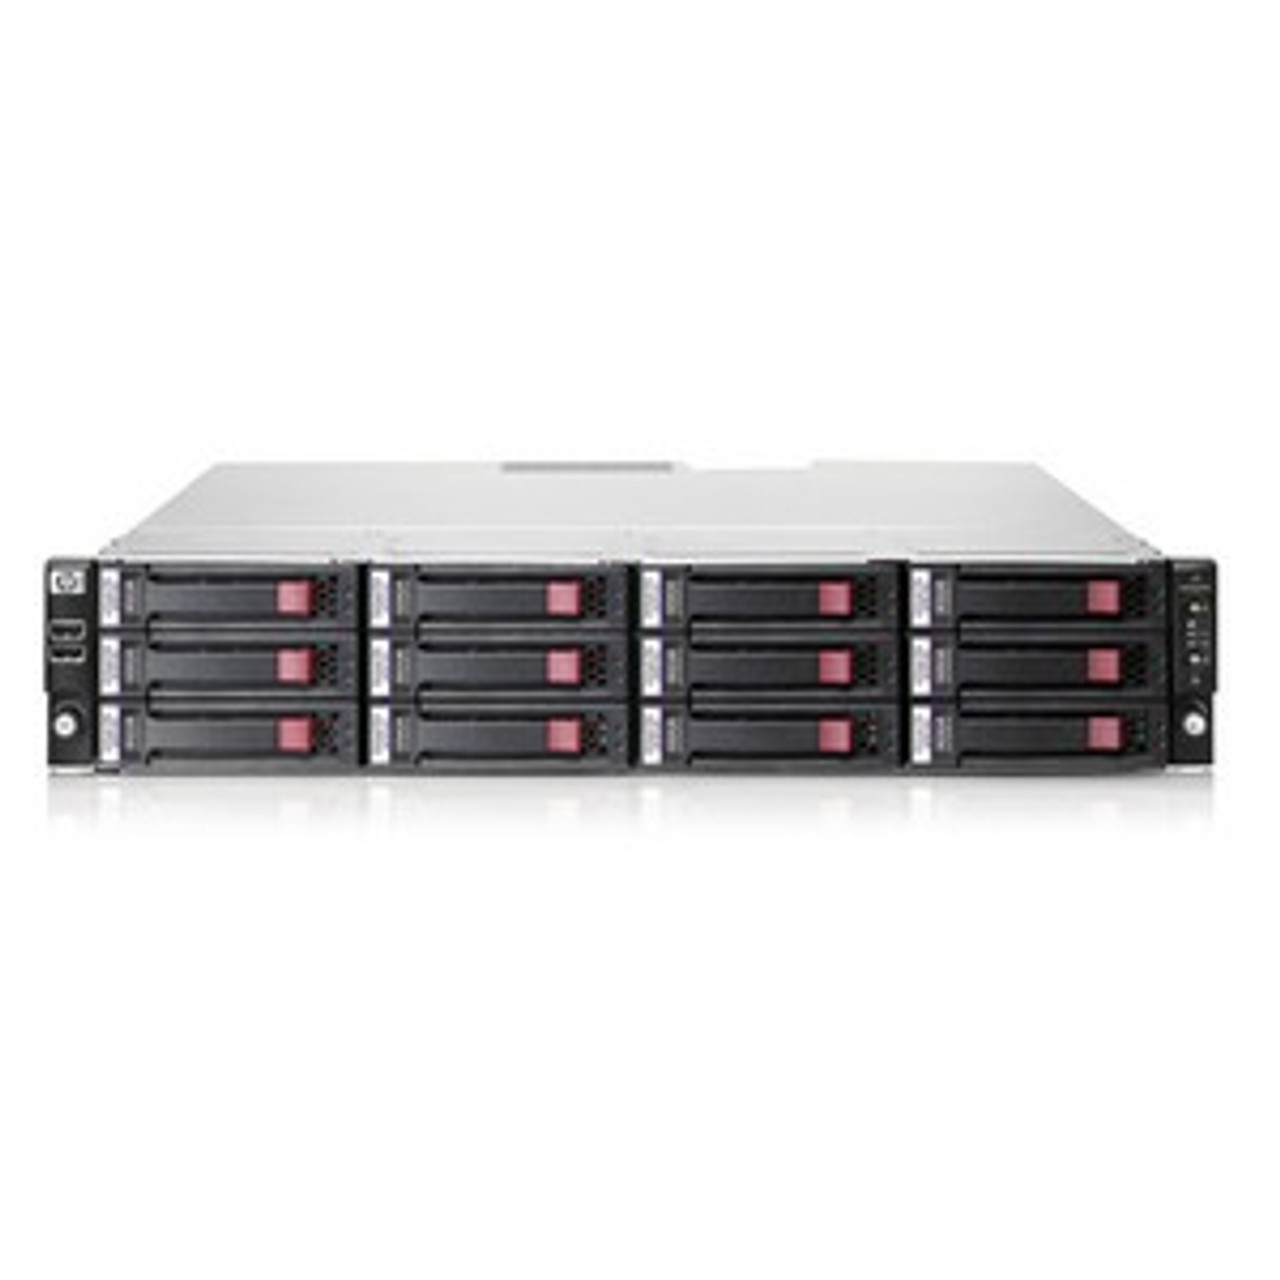 AK222A - HP StorageWorks AiO 1200r Network Storage Server 1 x AMD Opteron 2.2GHz 3.6TB Type A USB VGA DB-9 Serial